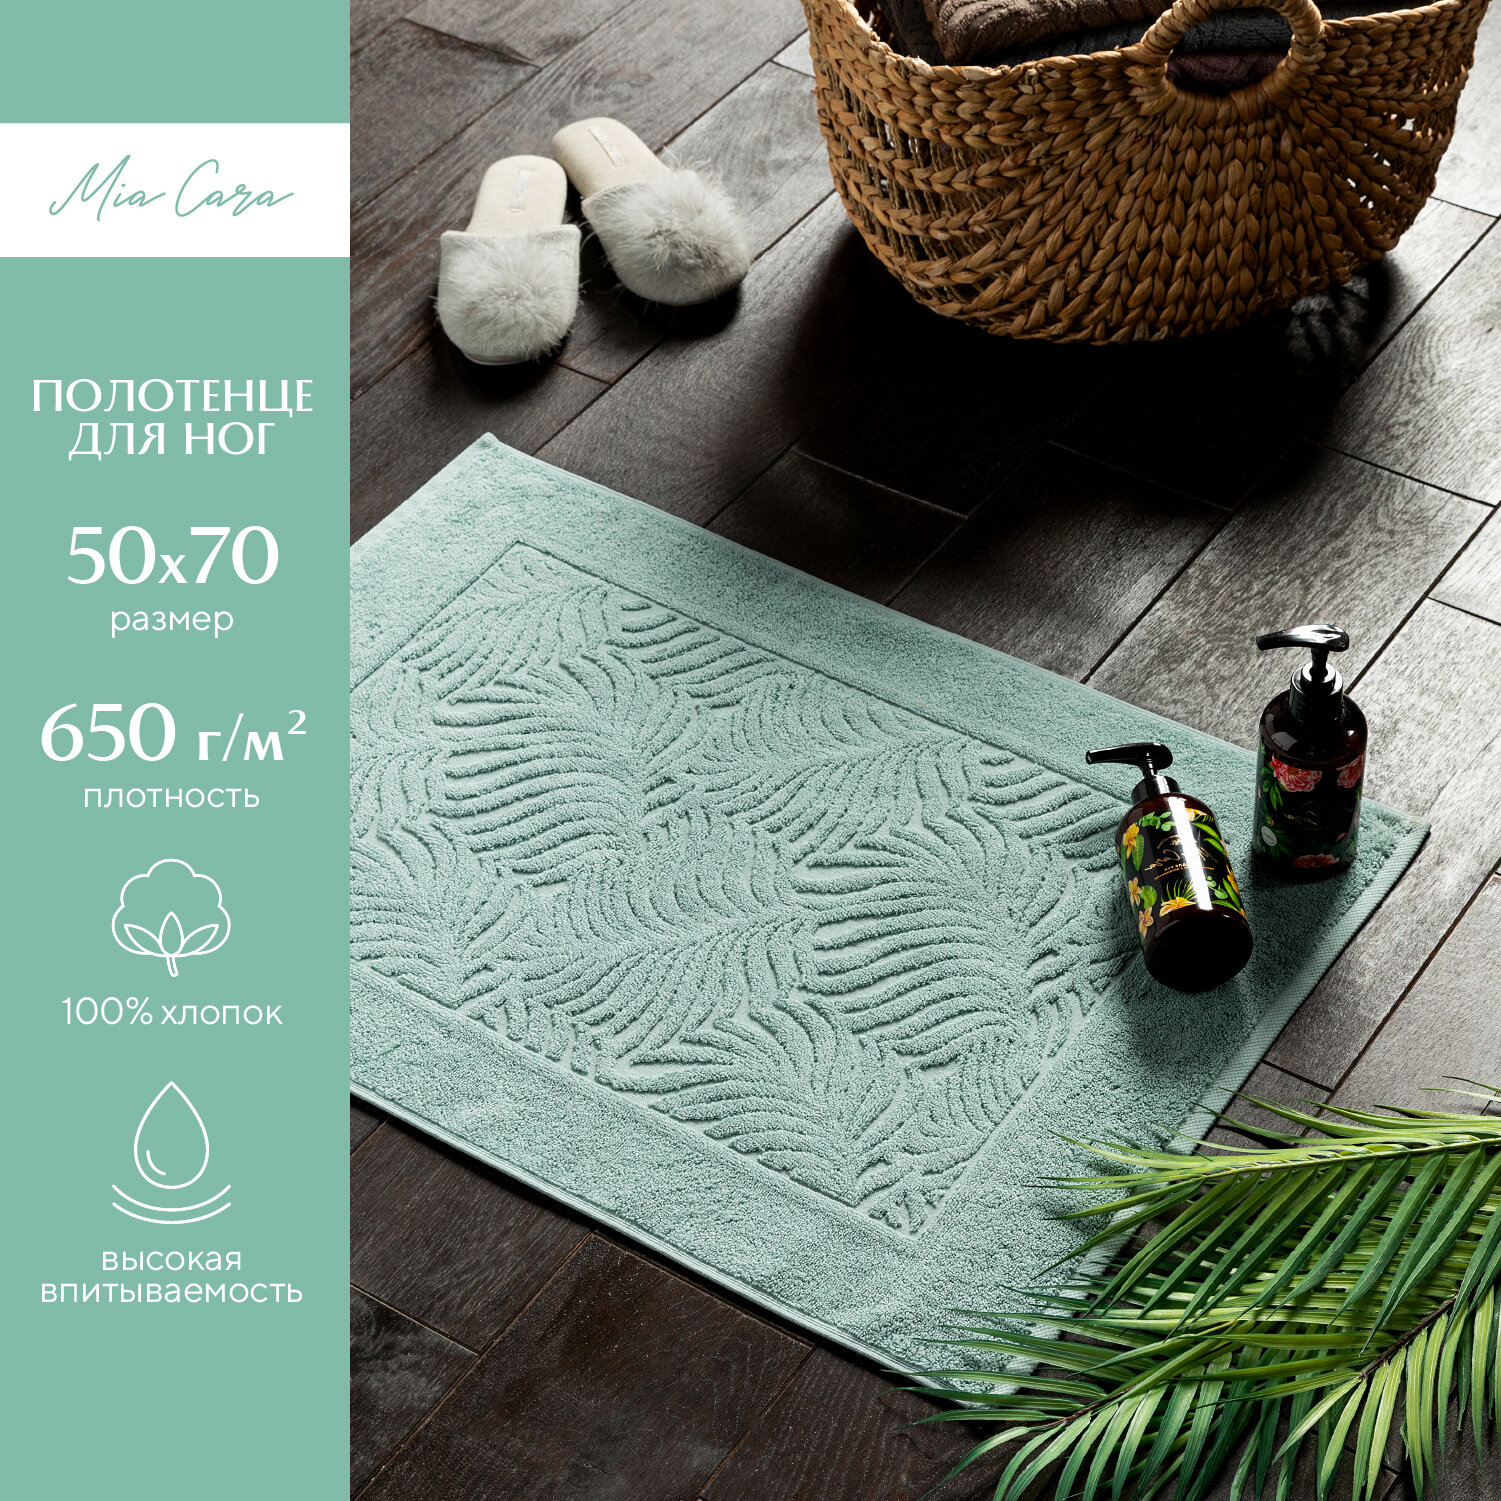 Полотенце махровое для ног 50х70 (коврик) "Mia Cara" Листья мятный